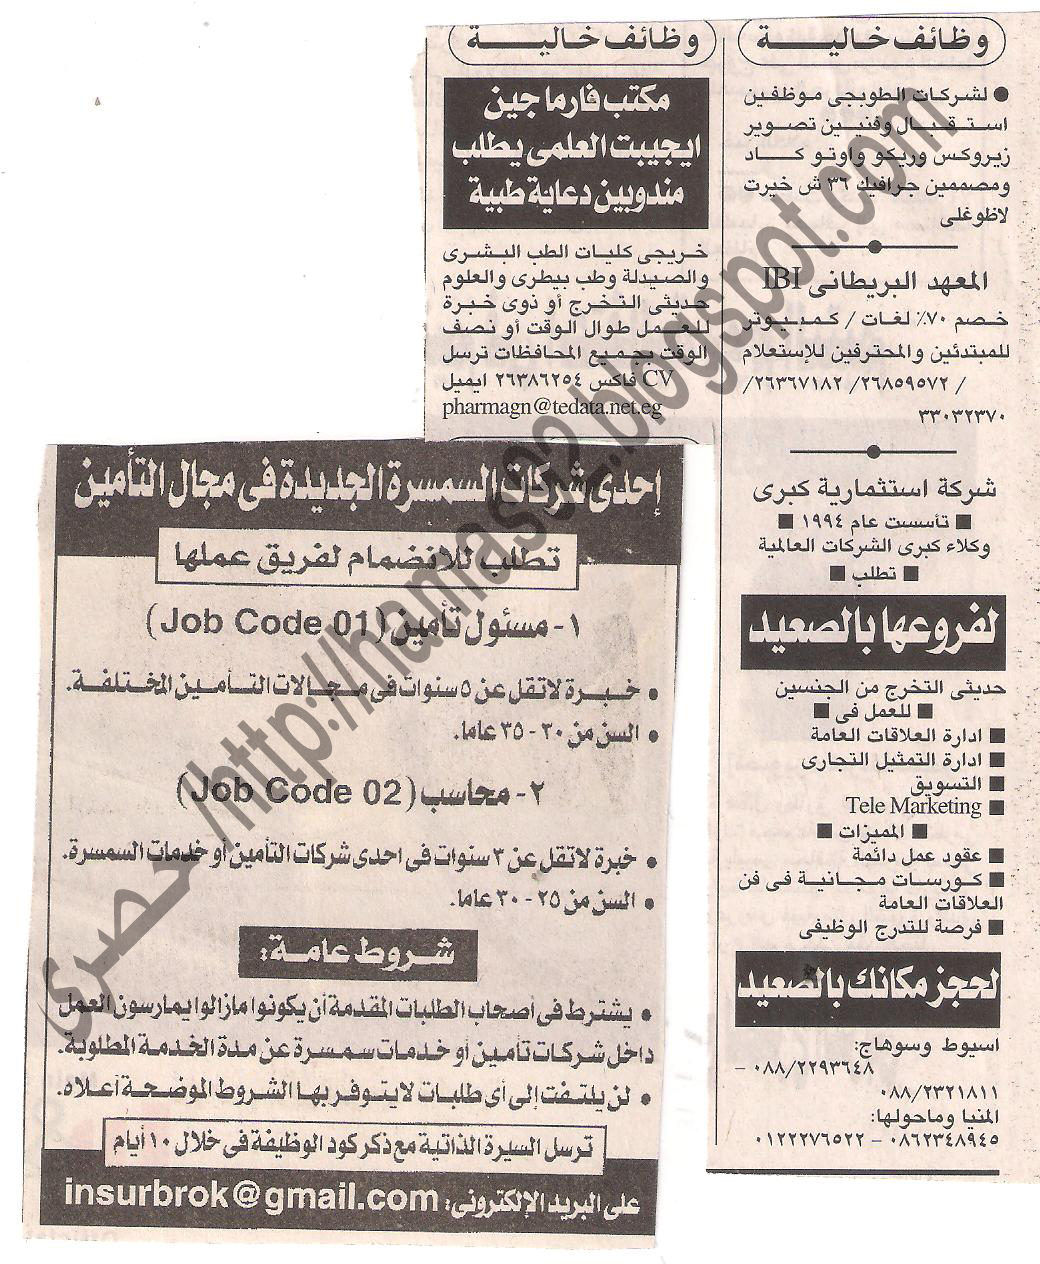 وظائف جريدة الاهرام 3 ابريل 2011 - وظائف خالية بتاريخ اليوم 3 ابريل 2011 Picture+001